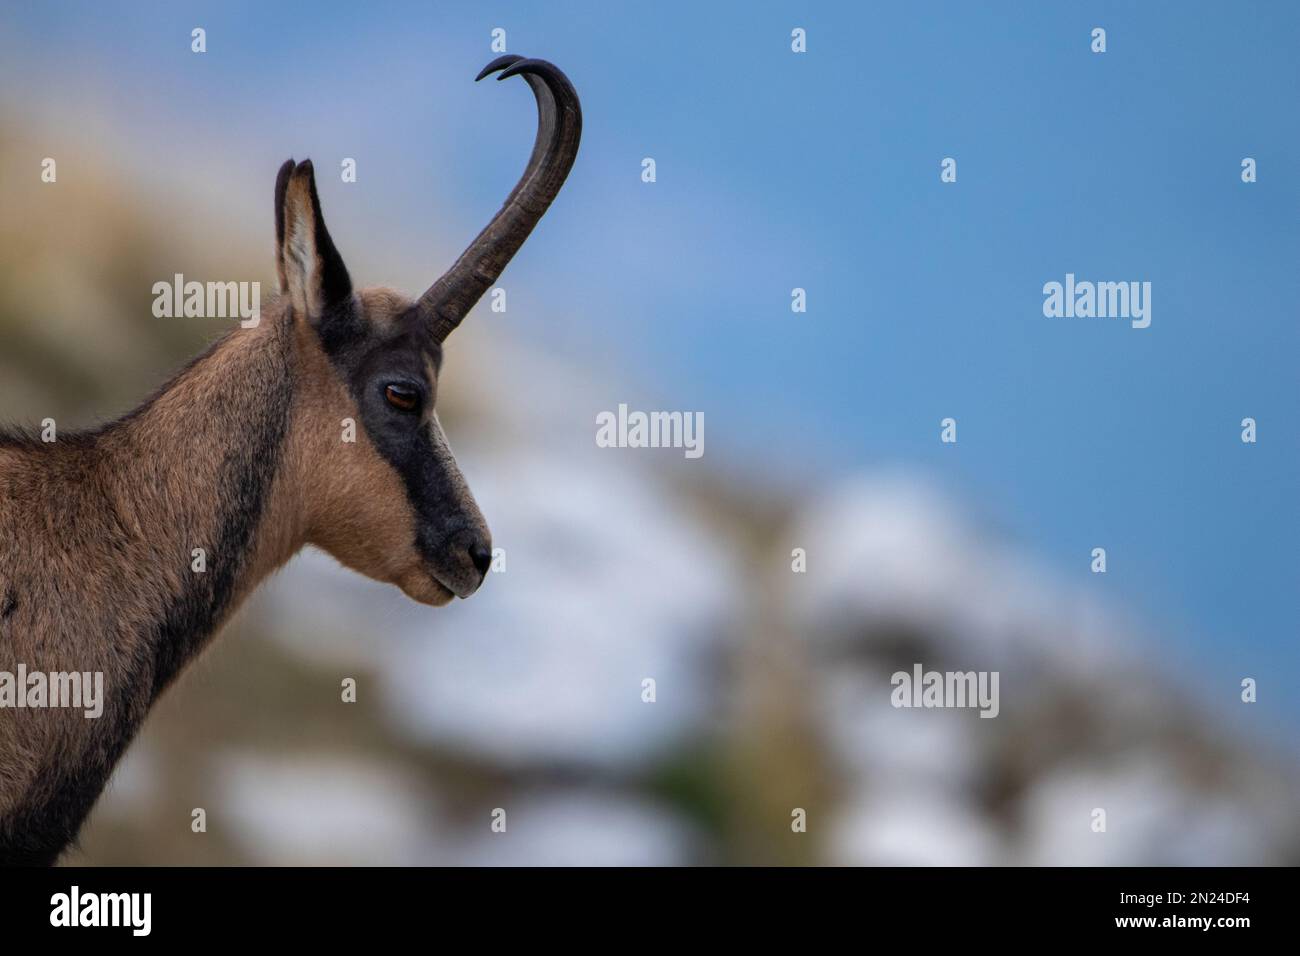 Selektive Fokusaufnahme eines Samois mit gebogenen Hörnern auf blauem Hintergrund Stockfoto